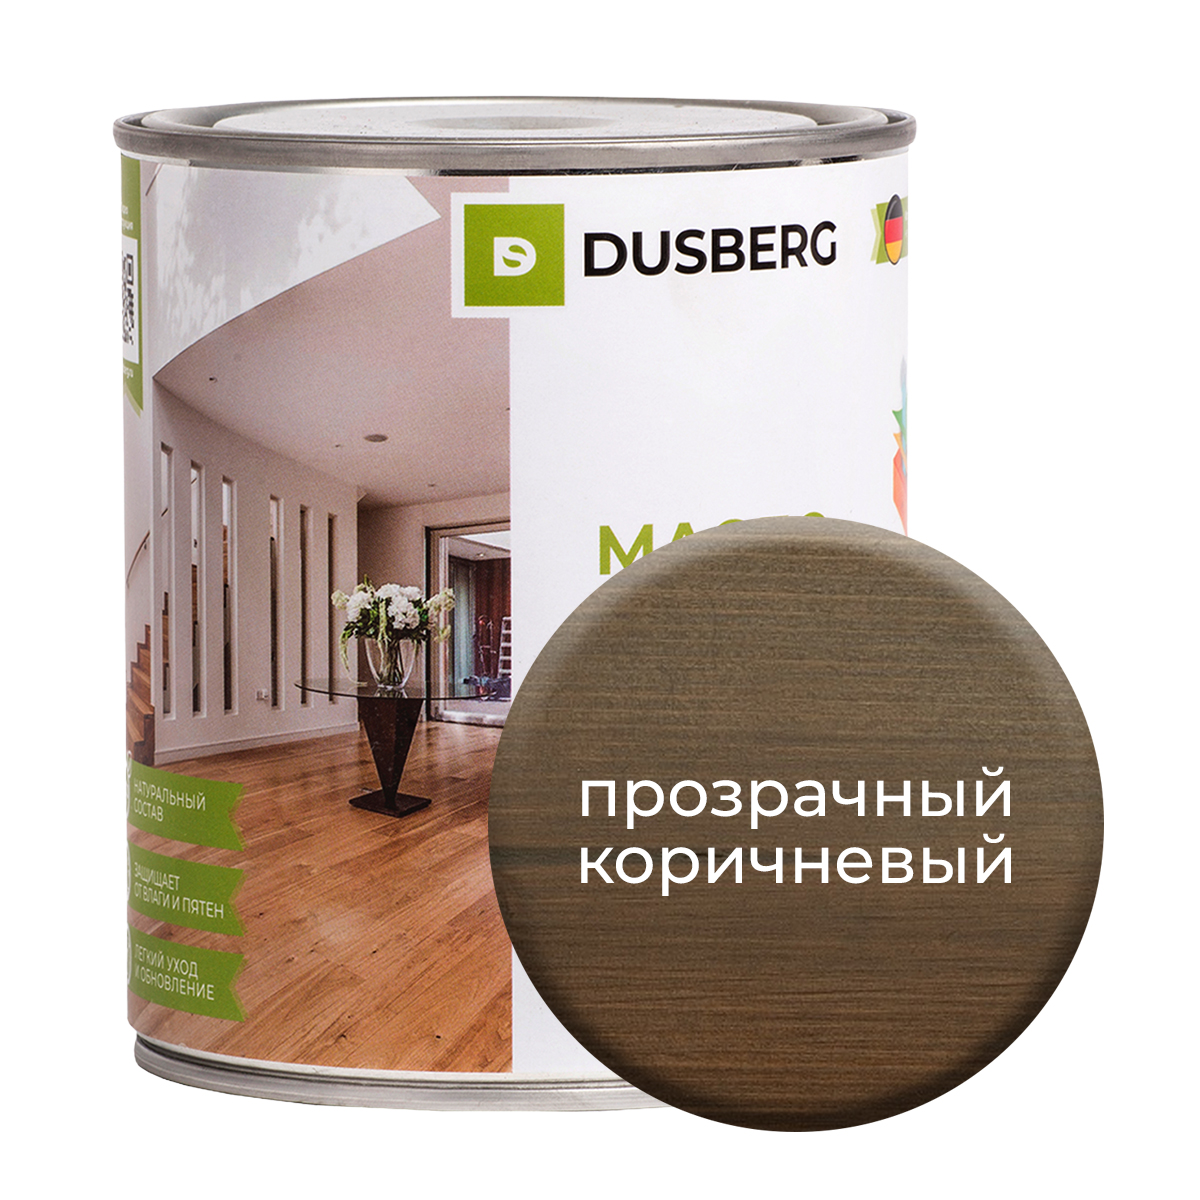 Масло Dusberg с твердым воском на бесцветной основе, 750 мл Прозрачно-коричневый масло dusberg для дерева на бесцветной основе 750 мл светло коричневый